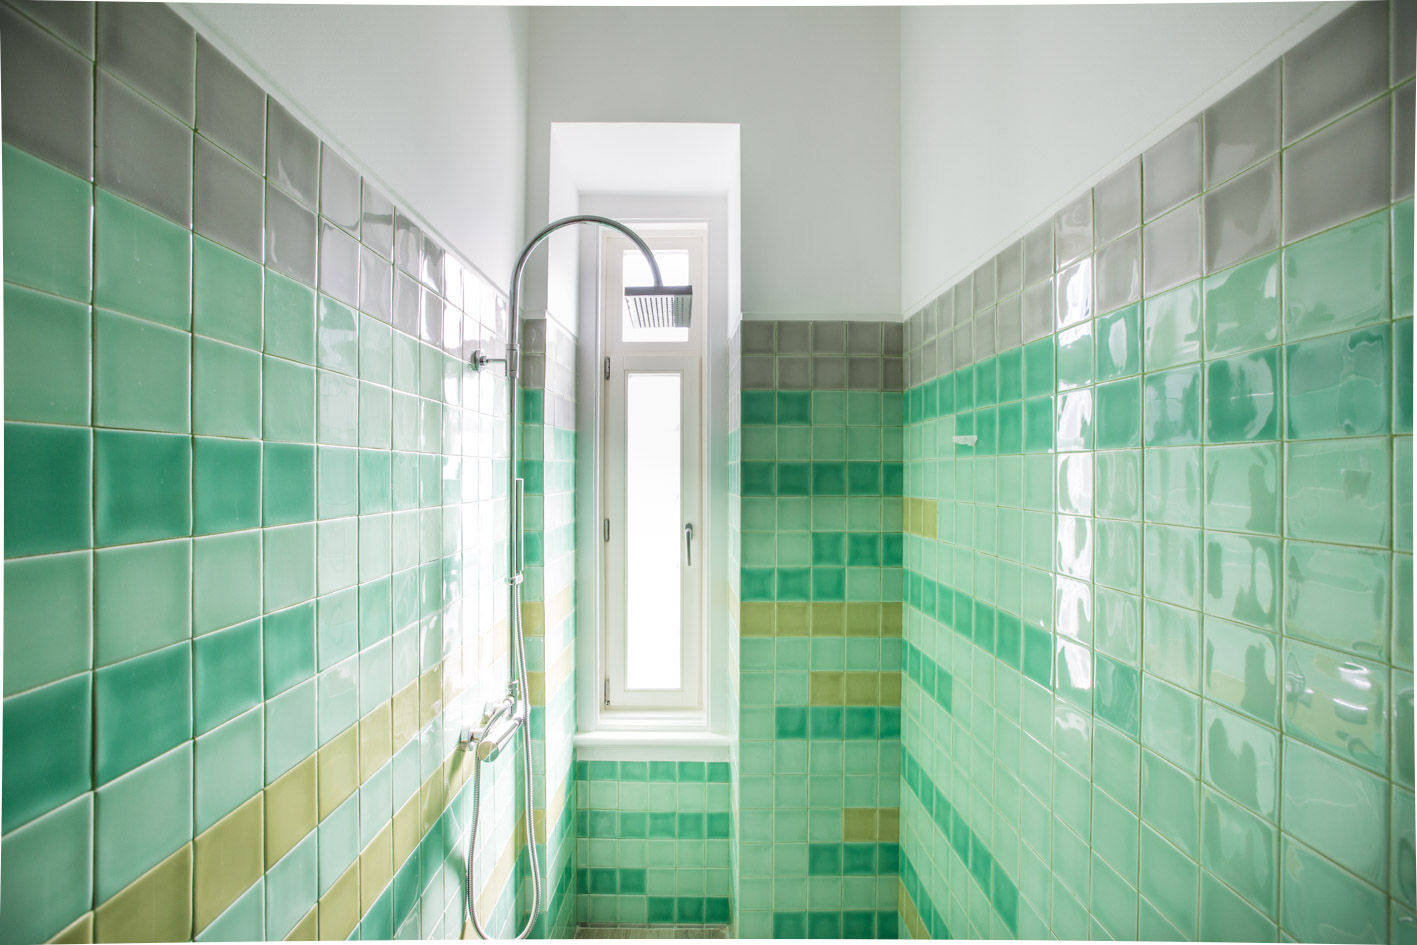 Uma casa de início de século, Architect Your Home Architect Your Home Modern bathroom